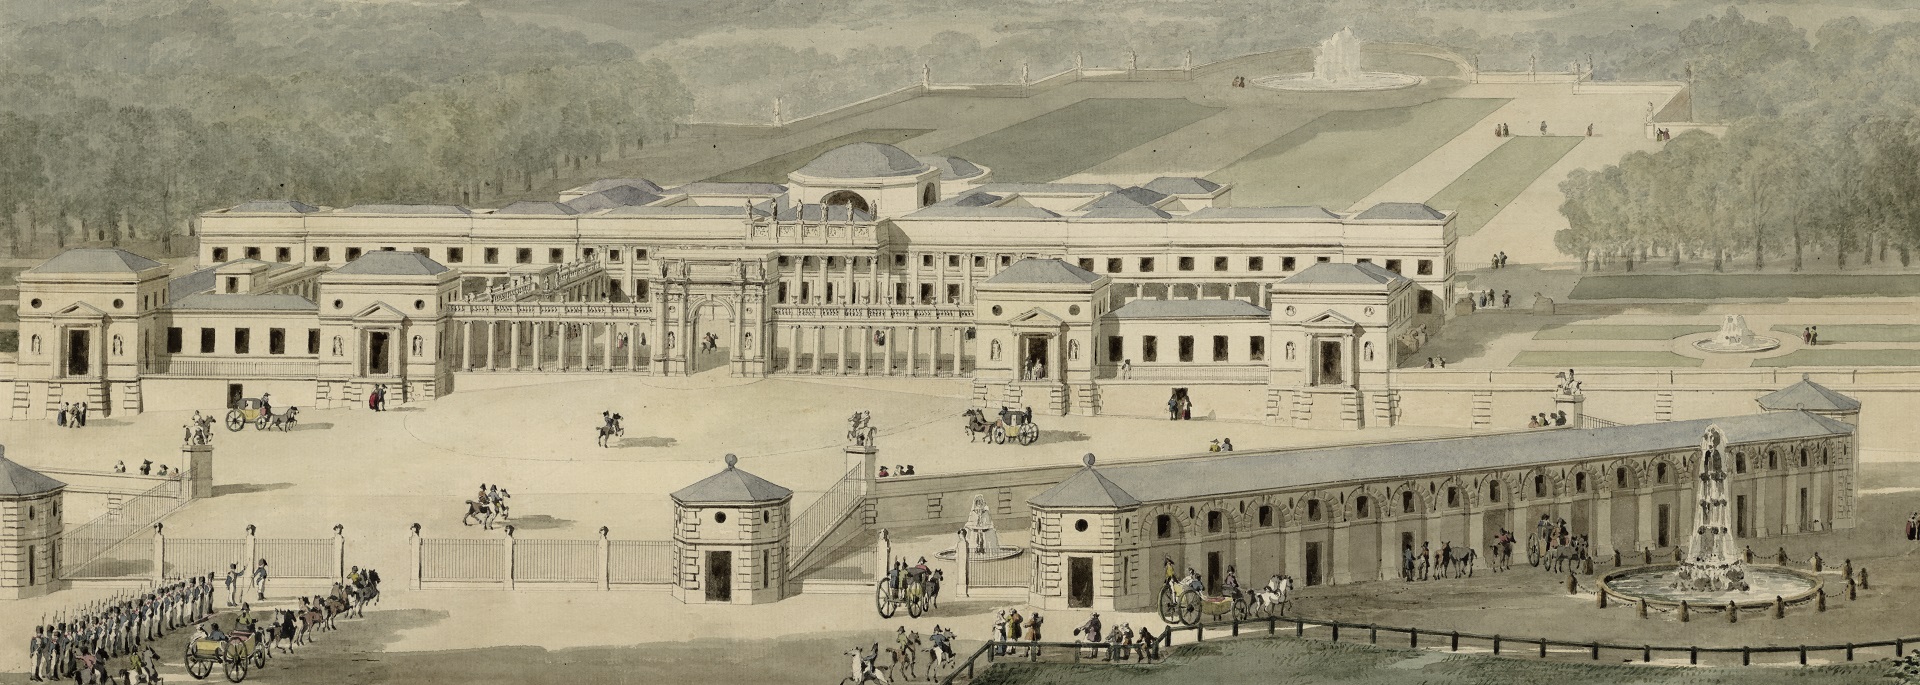 Pierre Fontaines Entwurf zum Landhaus Rosenstein in einer Perspektivenansicht aus dem Jahr 1819